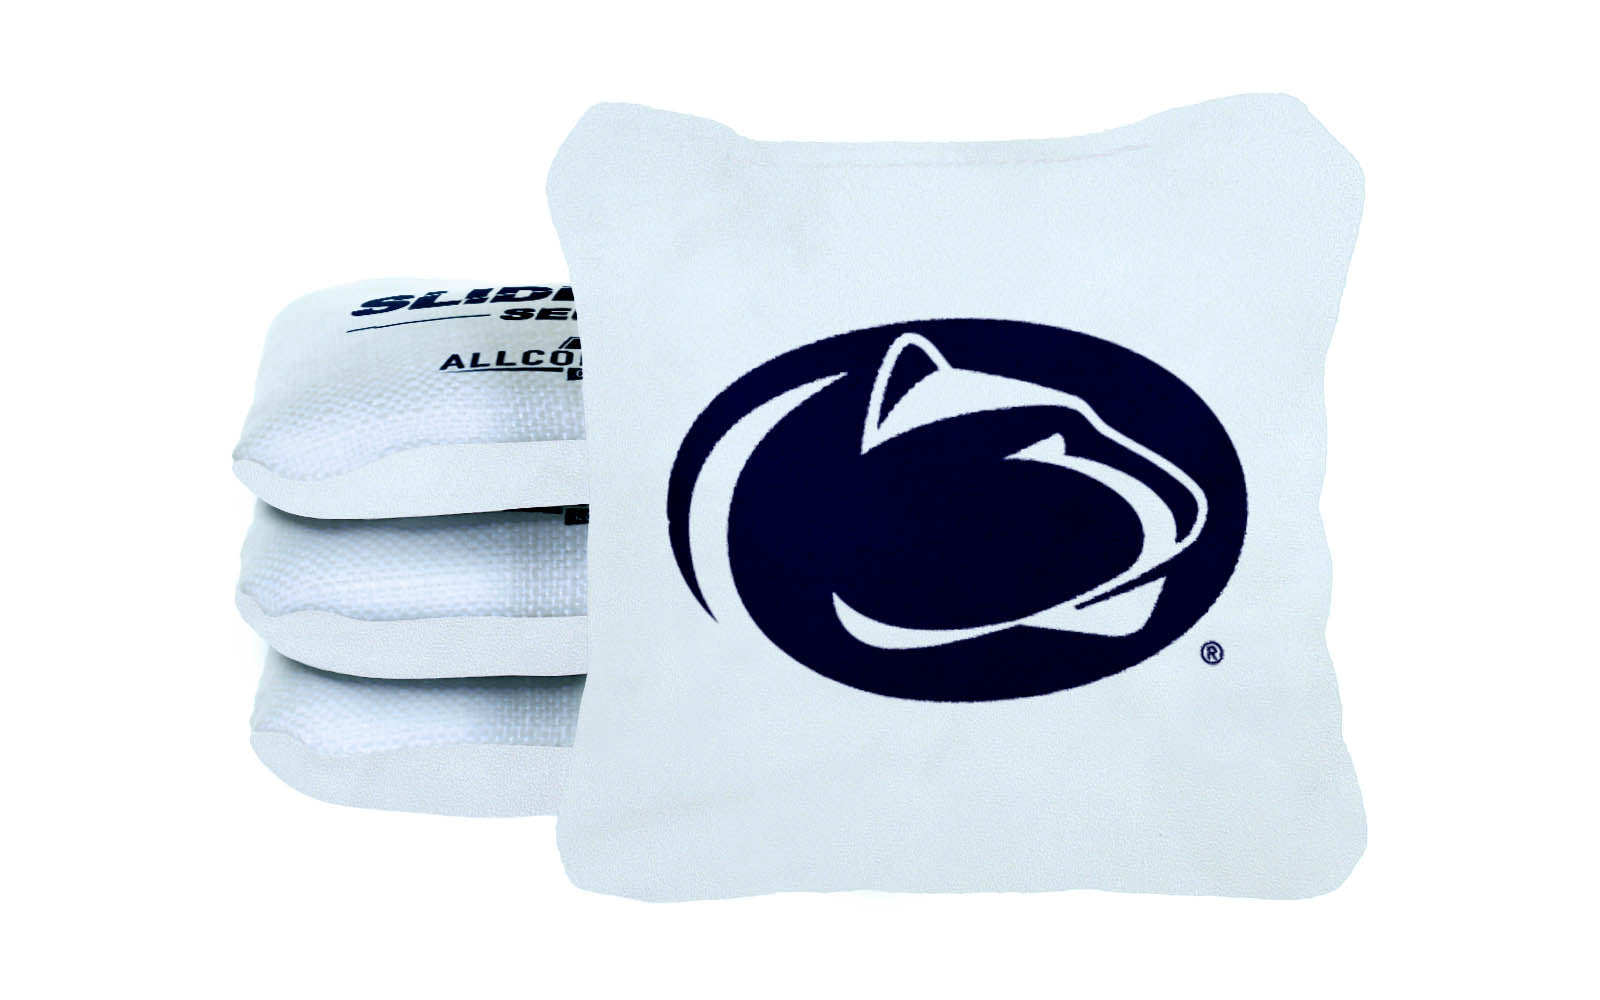 Officially Licensed Collegiate Cornhole Bags - Slide Rite - Set of 4 - Penn State University